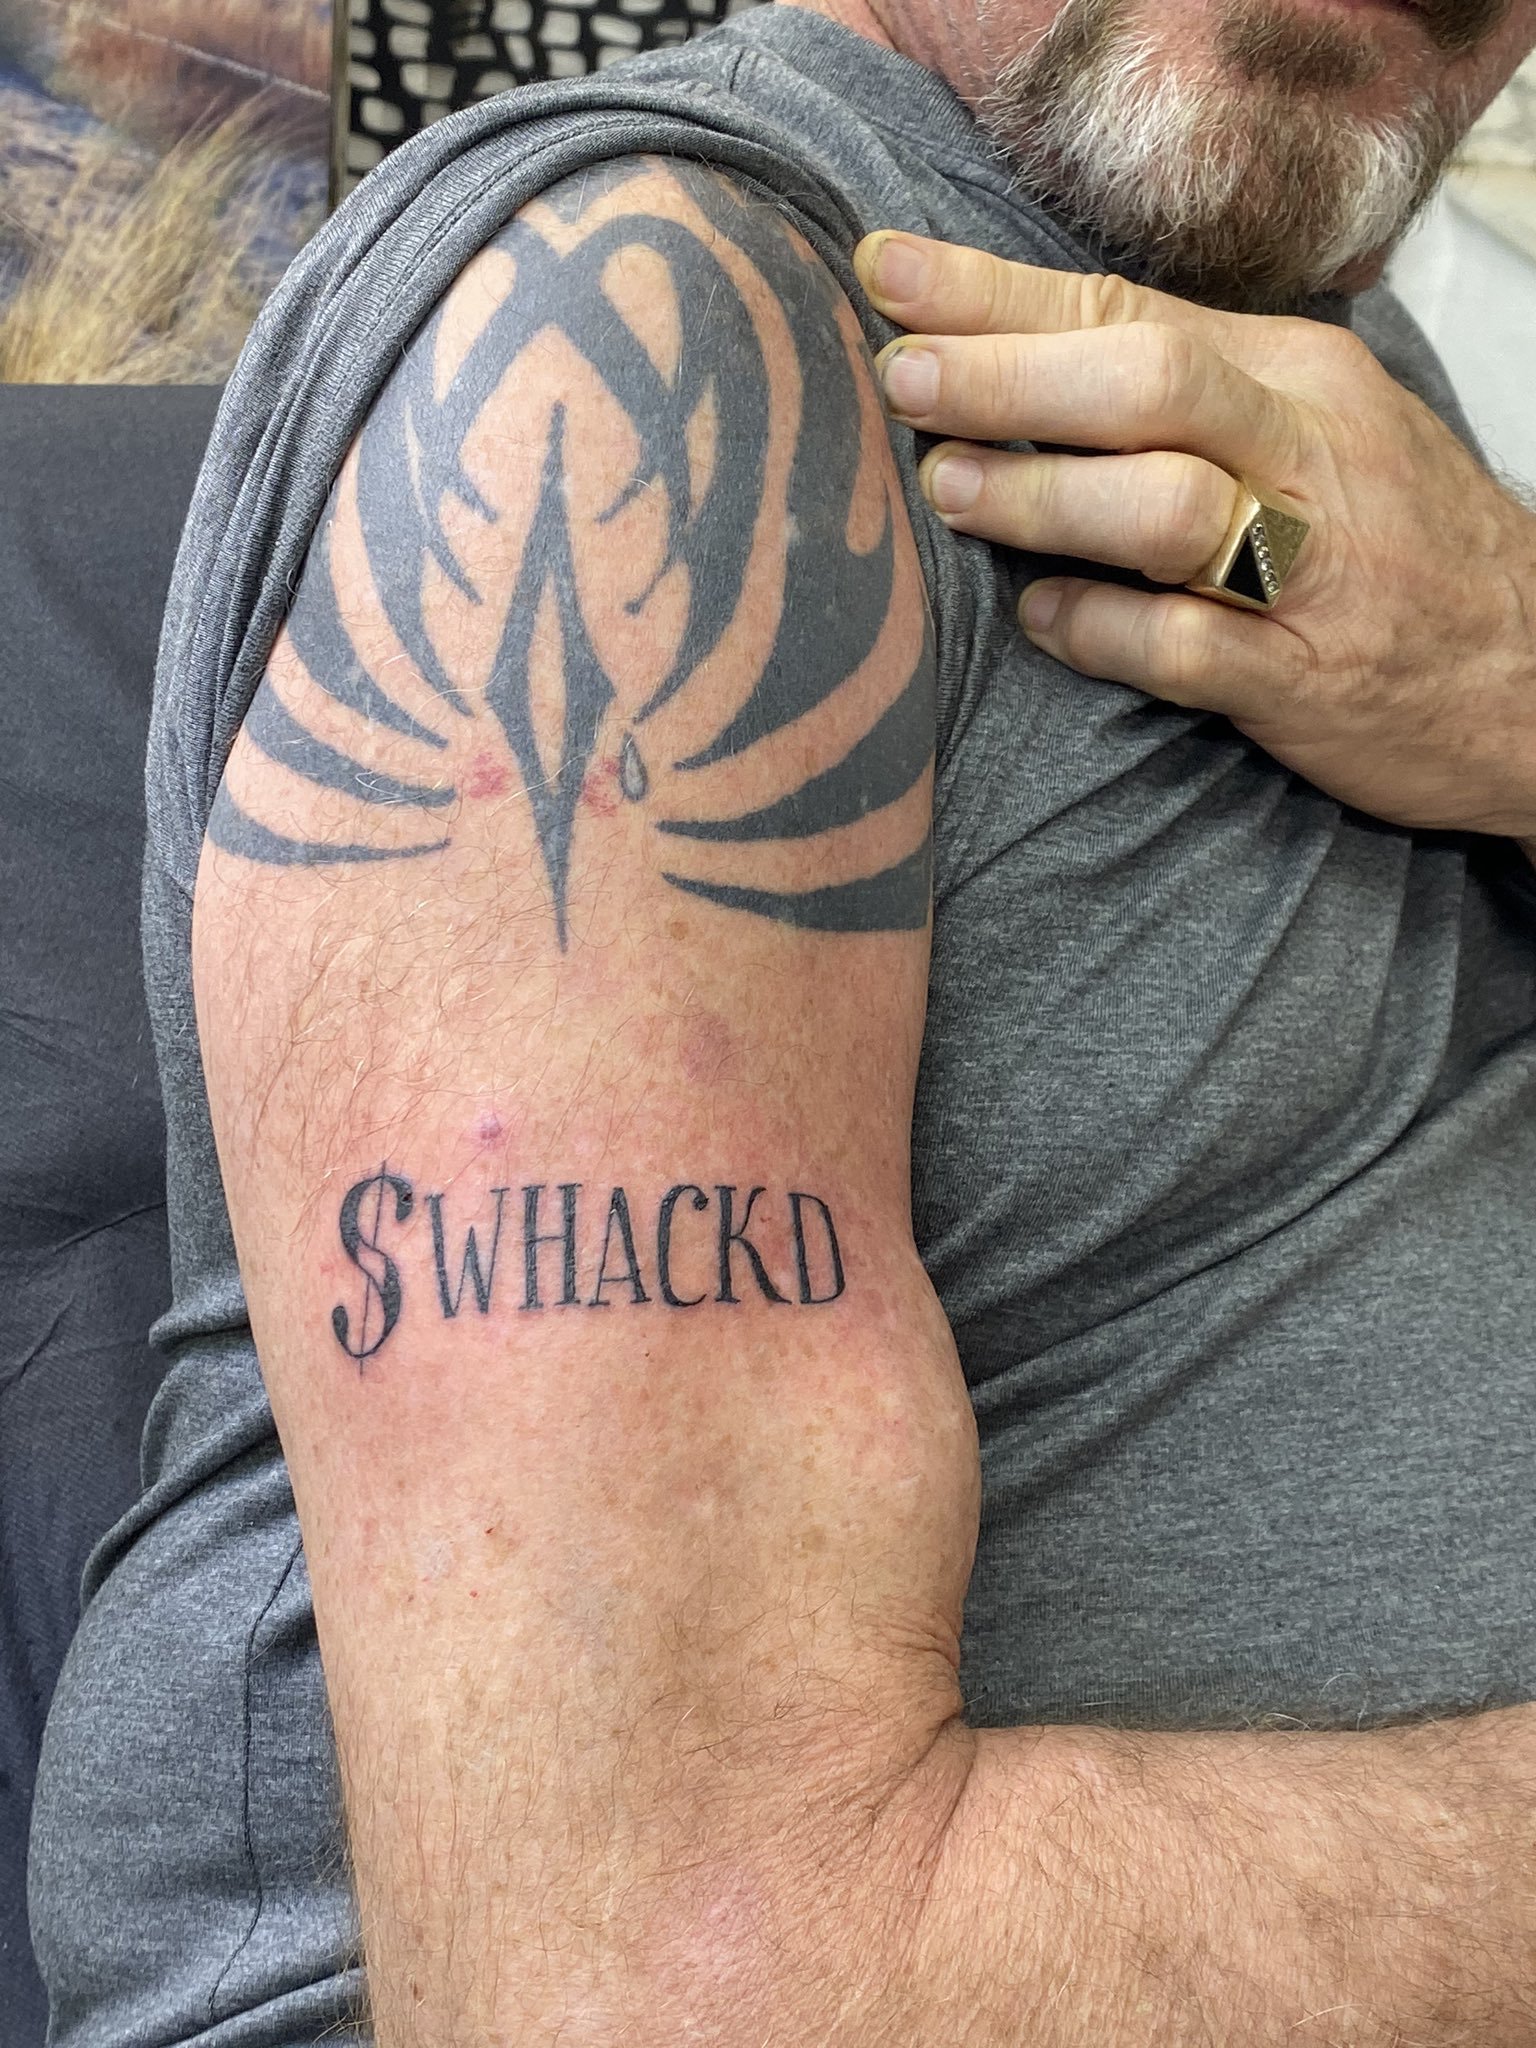 Tatuaje de John McAfee con el que ironizaba que si se suicidaba en realidad le habrían asesinado.